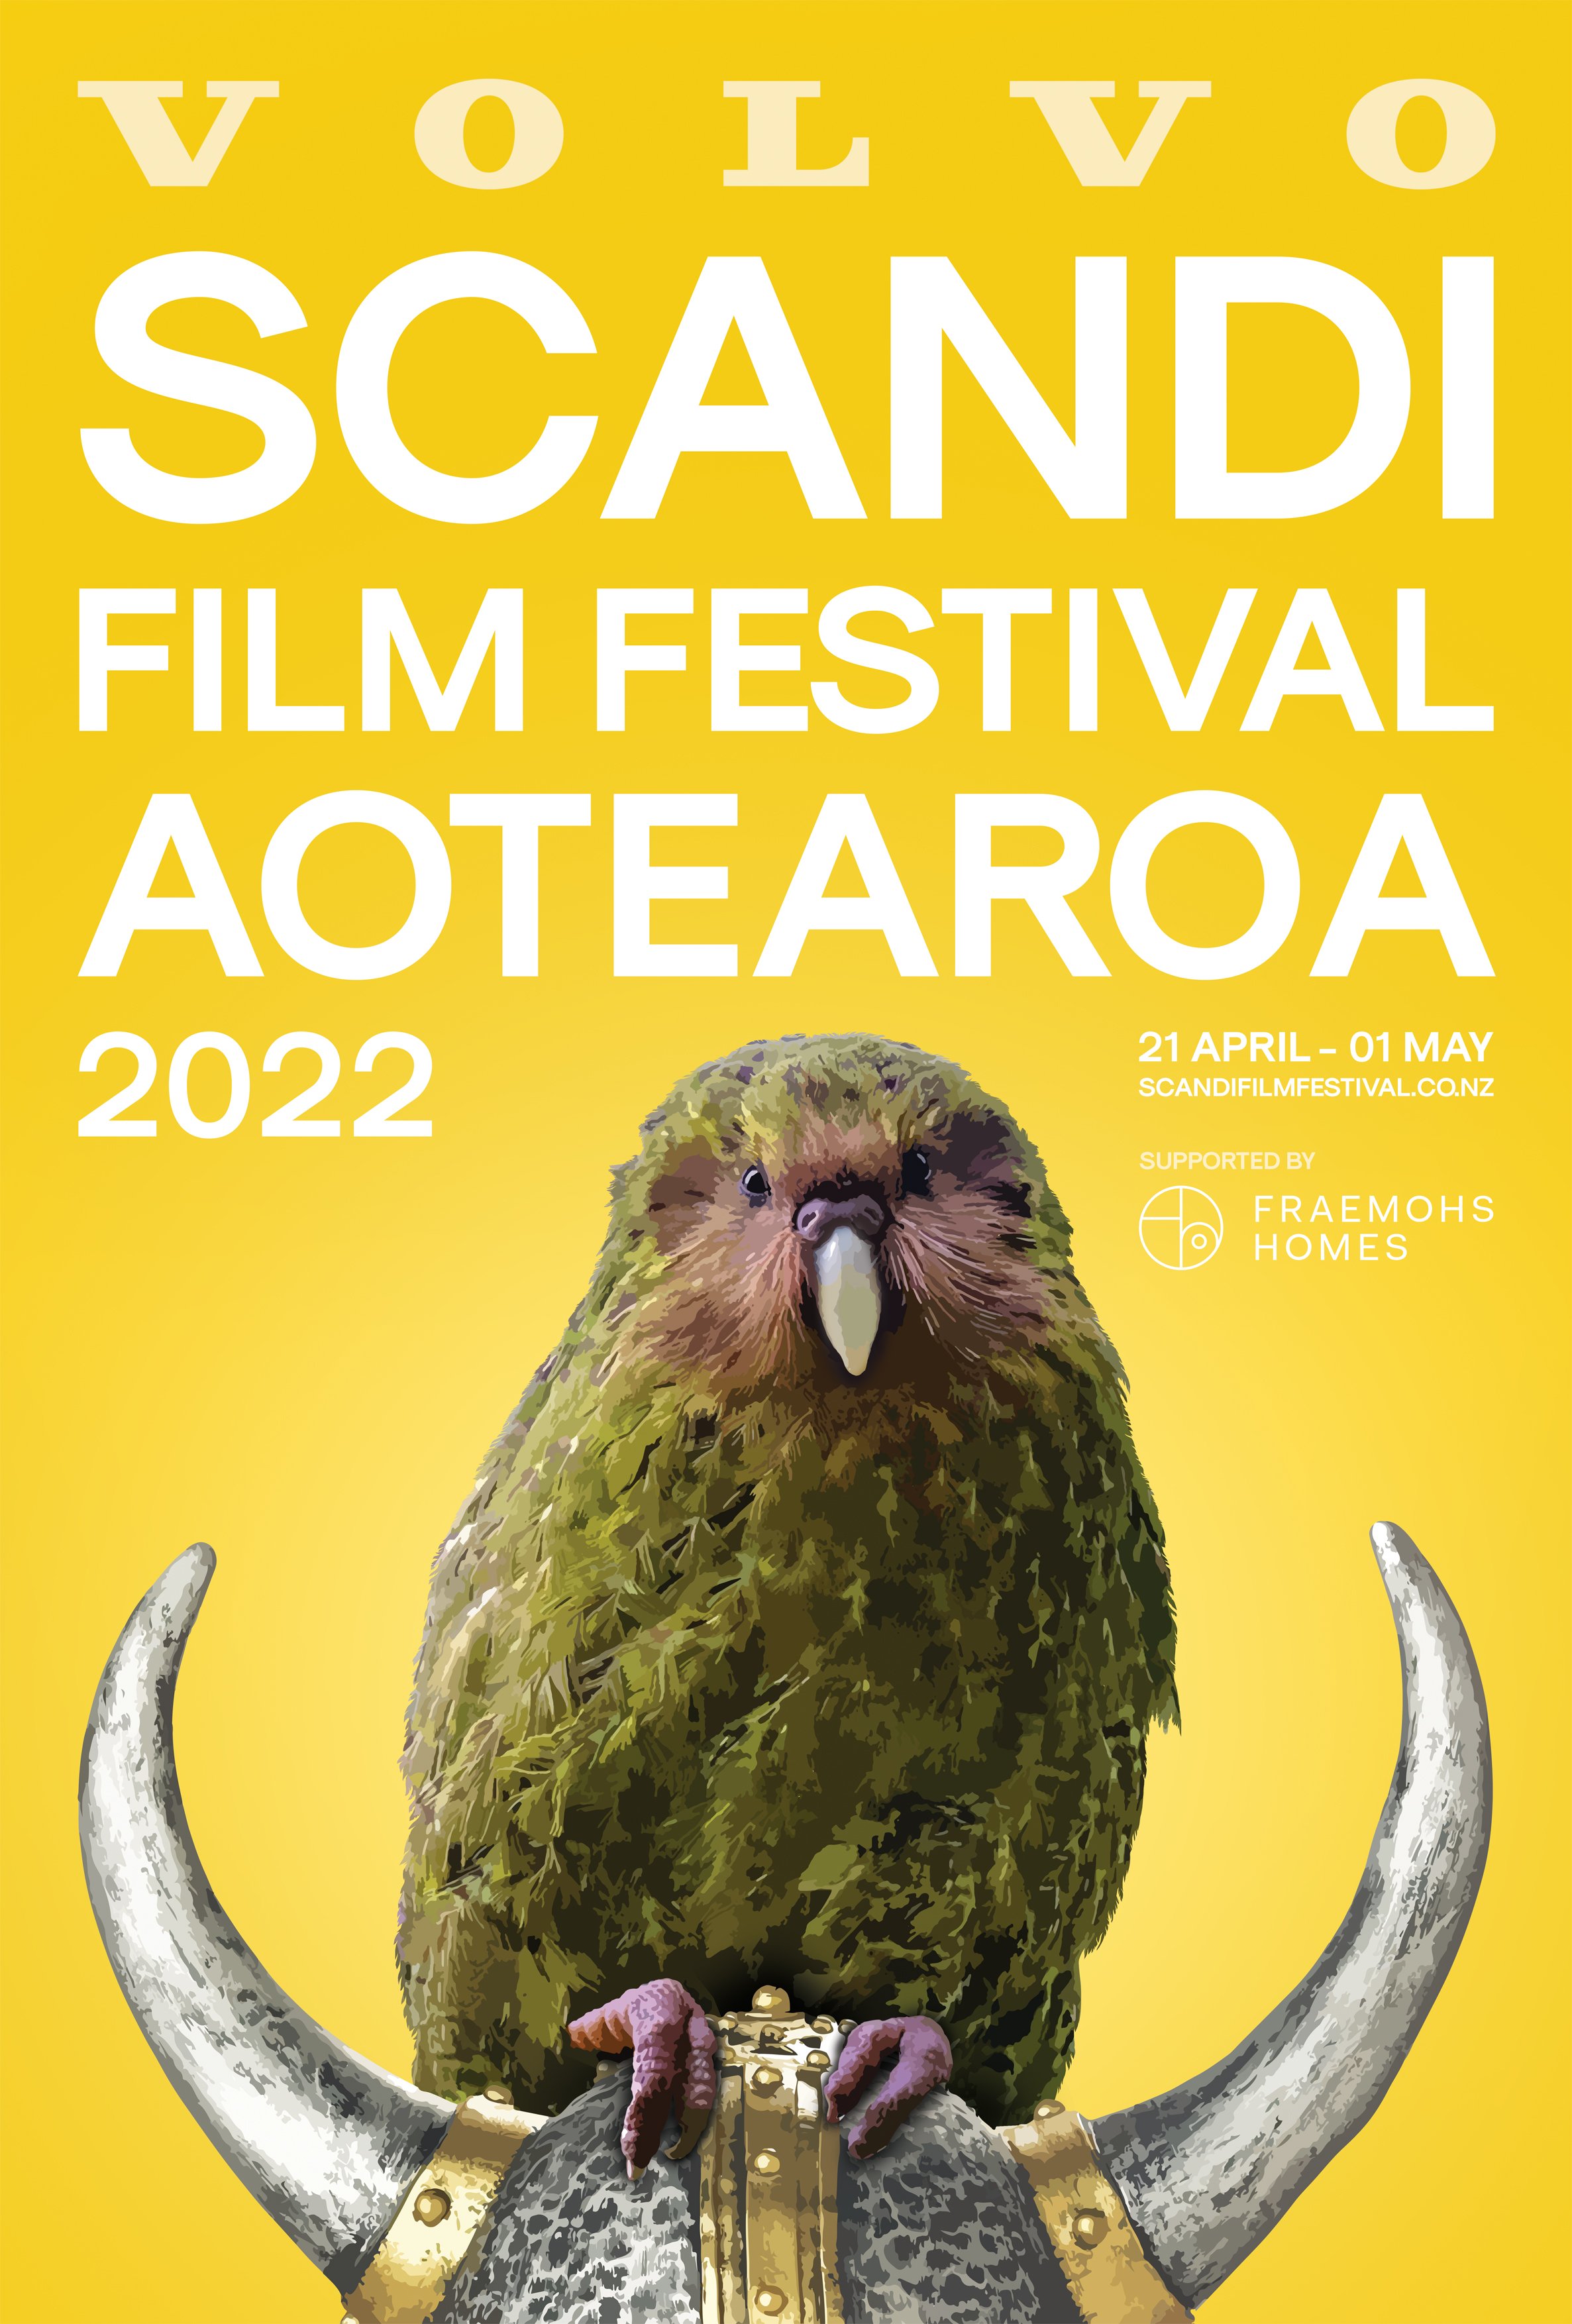 Volvo Scandi Film Festival Aotearoa 2022 // Publicity Campaign